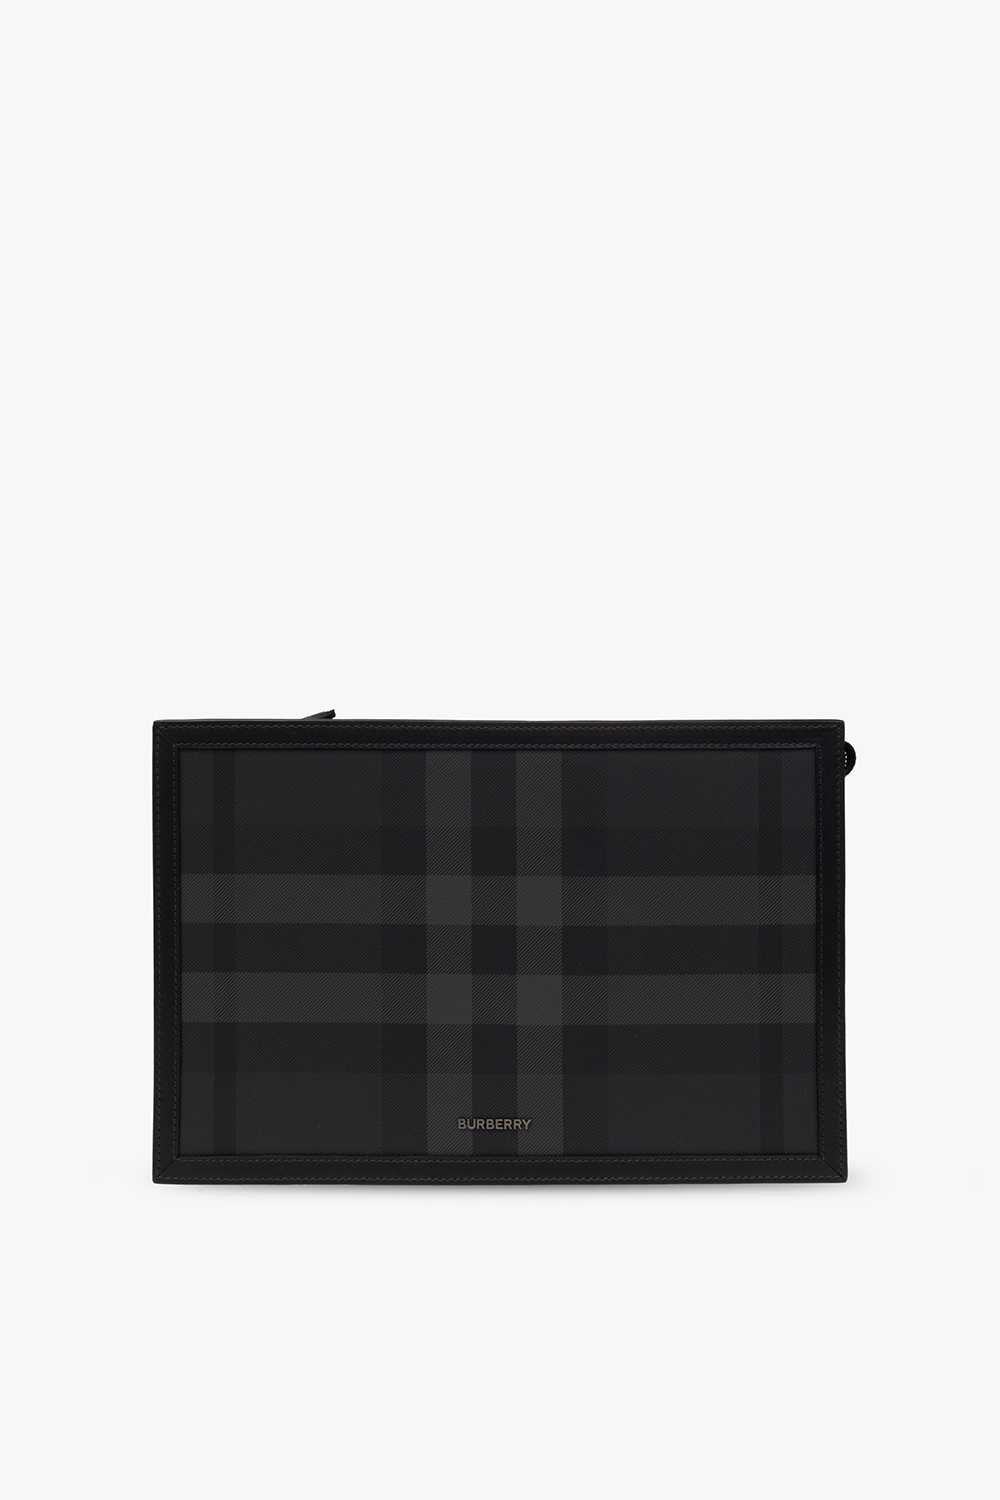 Burberry ‘Frame’ handbag